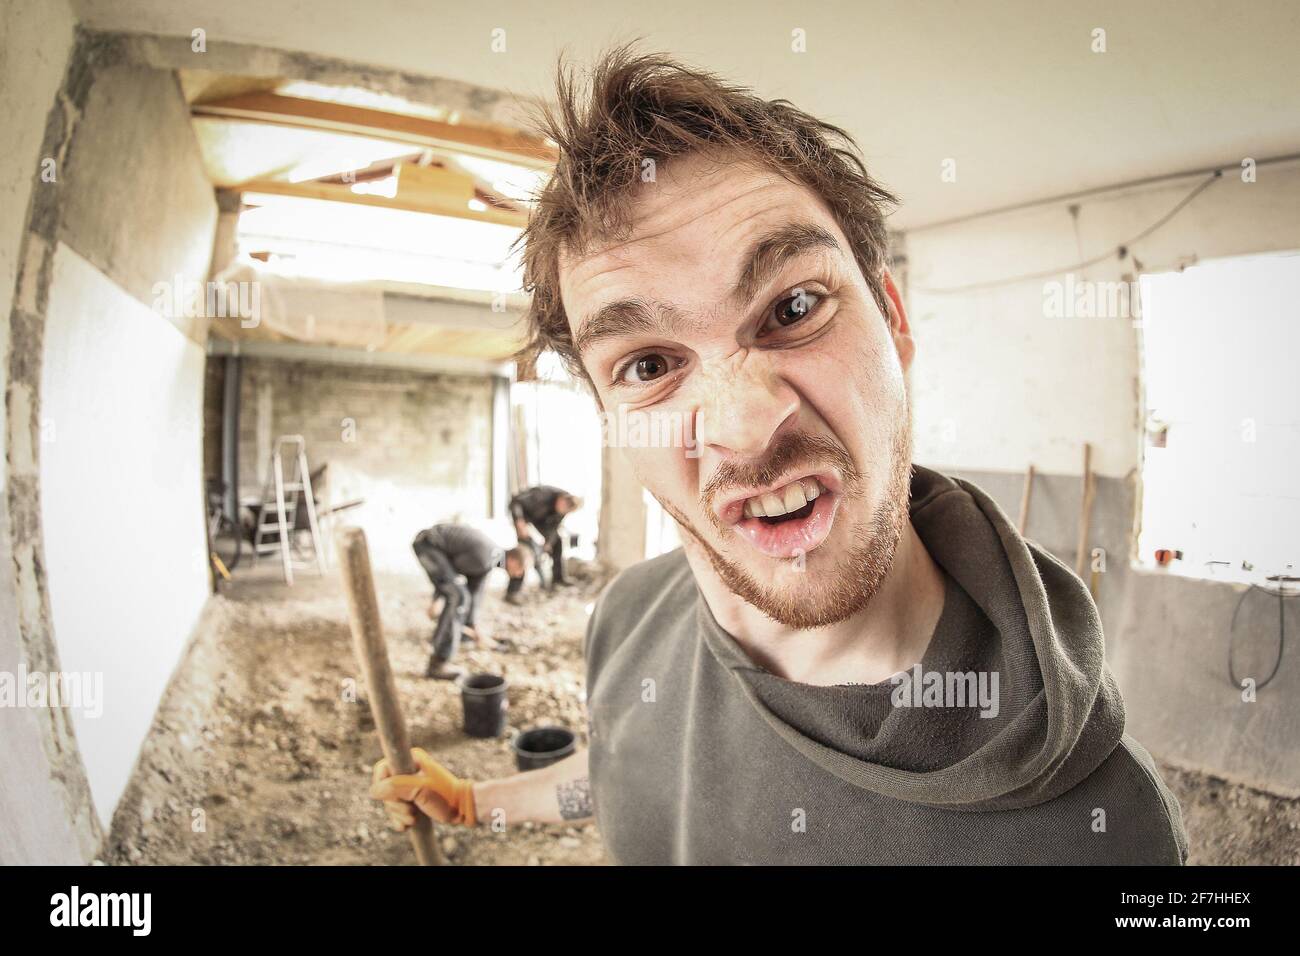 Un travailleur qui fait un visage stupide tout en rénovant une maison. Autres travailleurs en arrière-plan. Vue fisheye. Banque D'Images